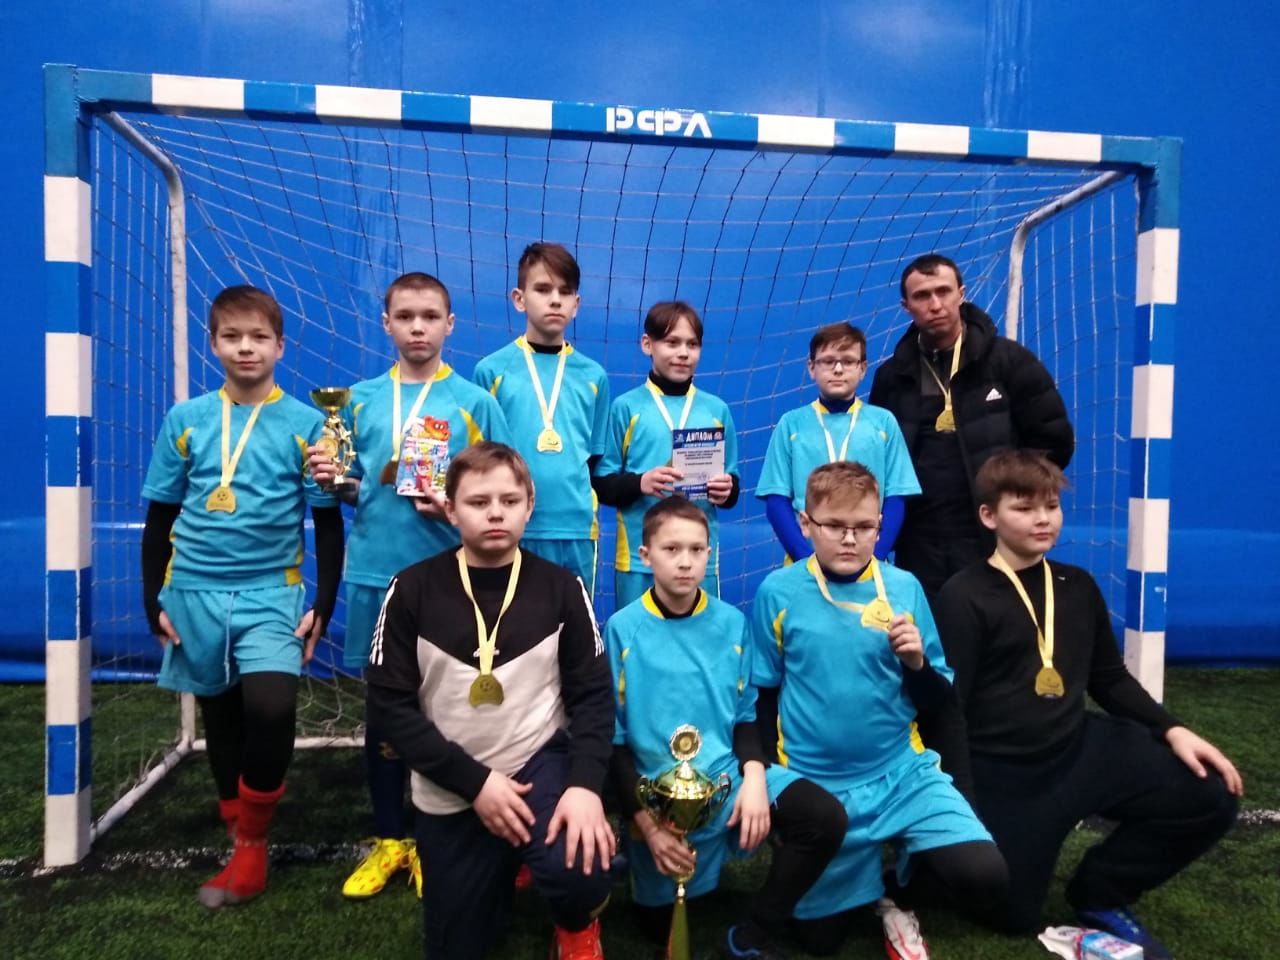 Футбольная команда «Аксу» стала победителем Всероссийских соревнований